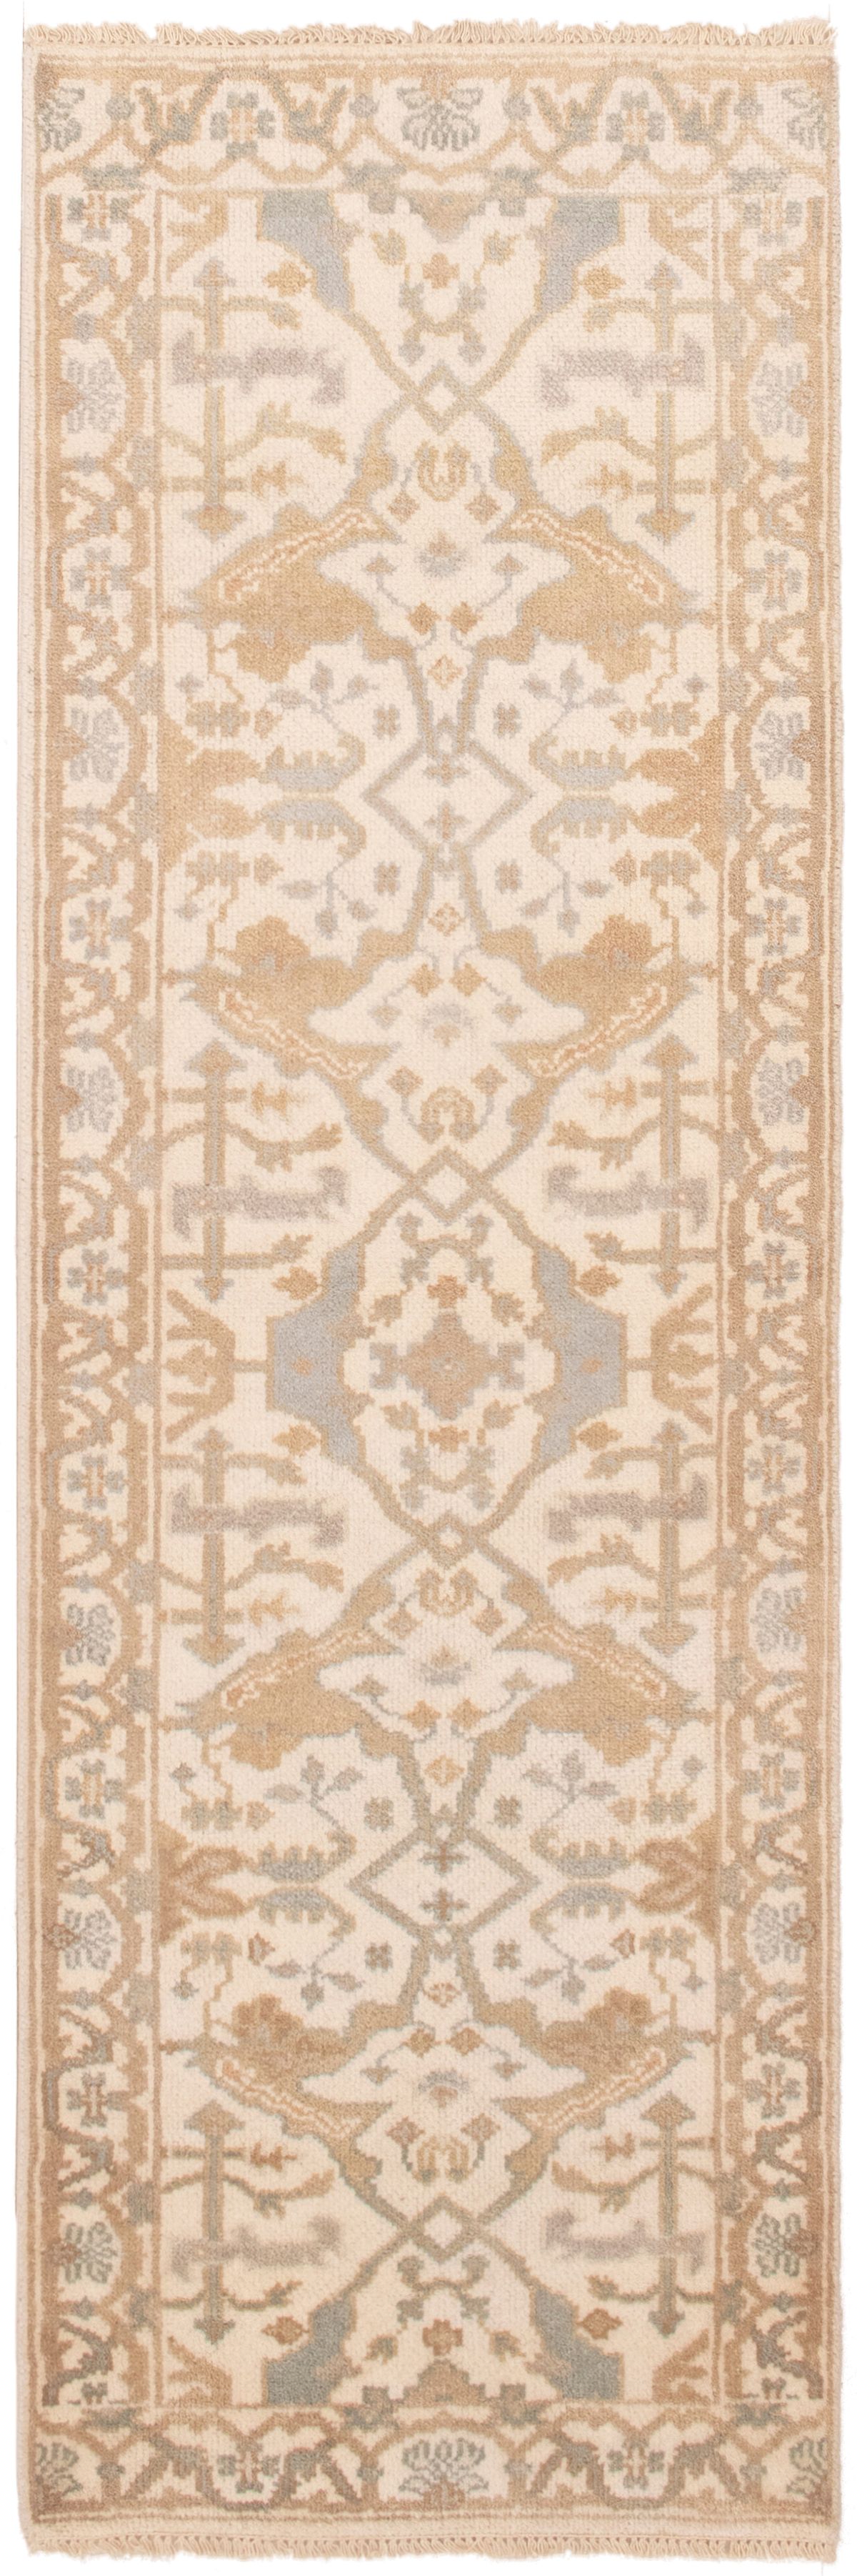 Hand-knotted Royal Ushak Ivory Wool Rug 2'7" x 7'11" Size: 2'7" x 7'11"  